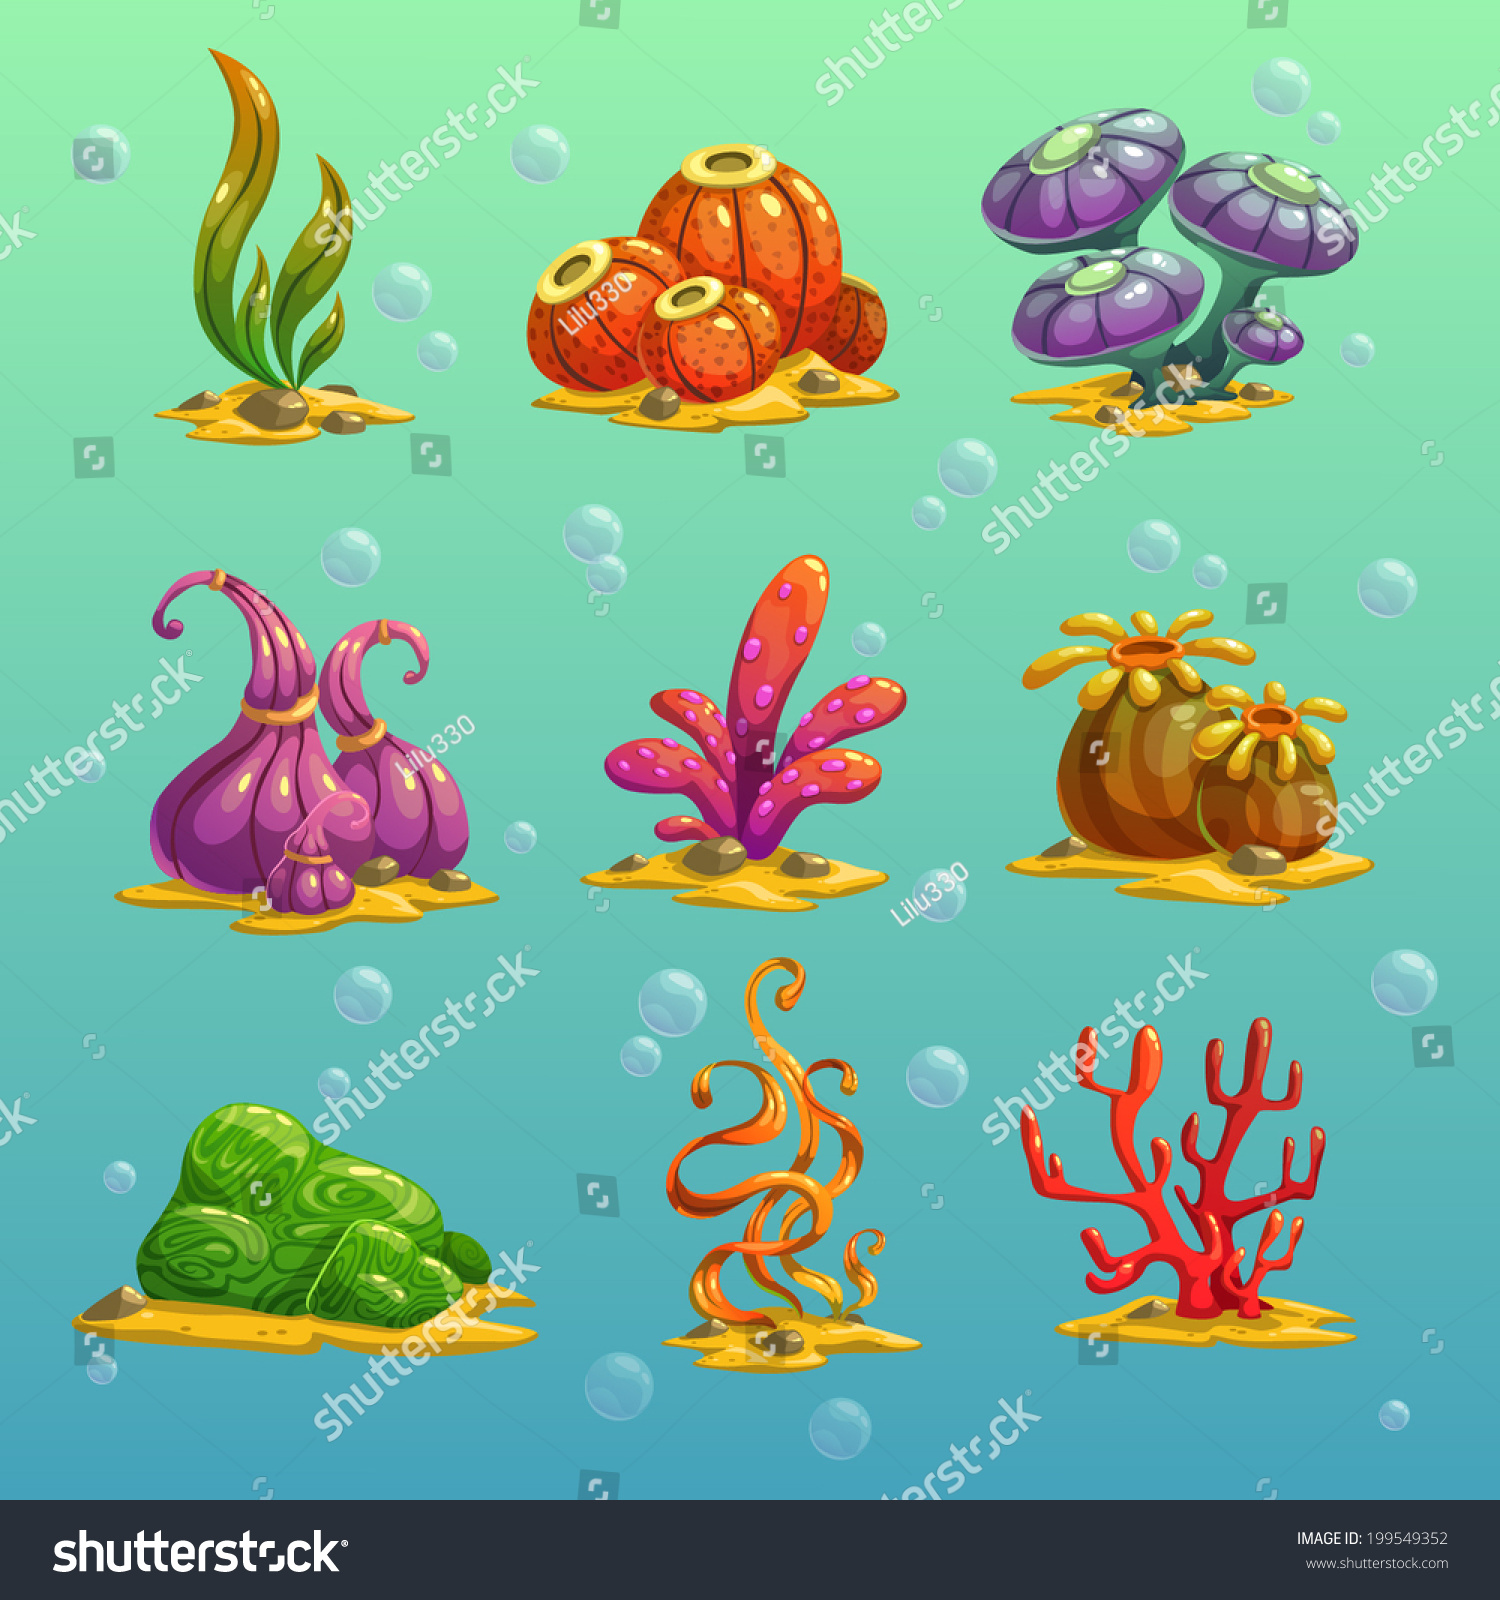 Cartoon Algae Vector Set - 199549352 : Shutterstock